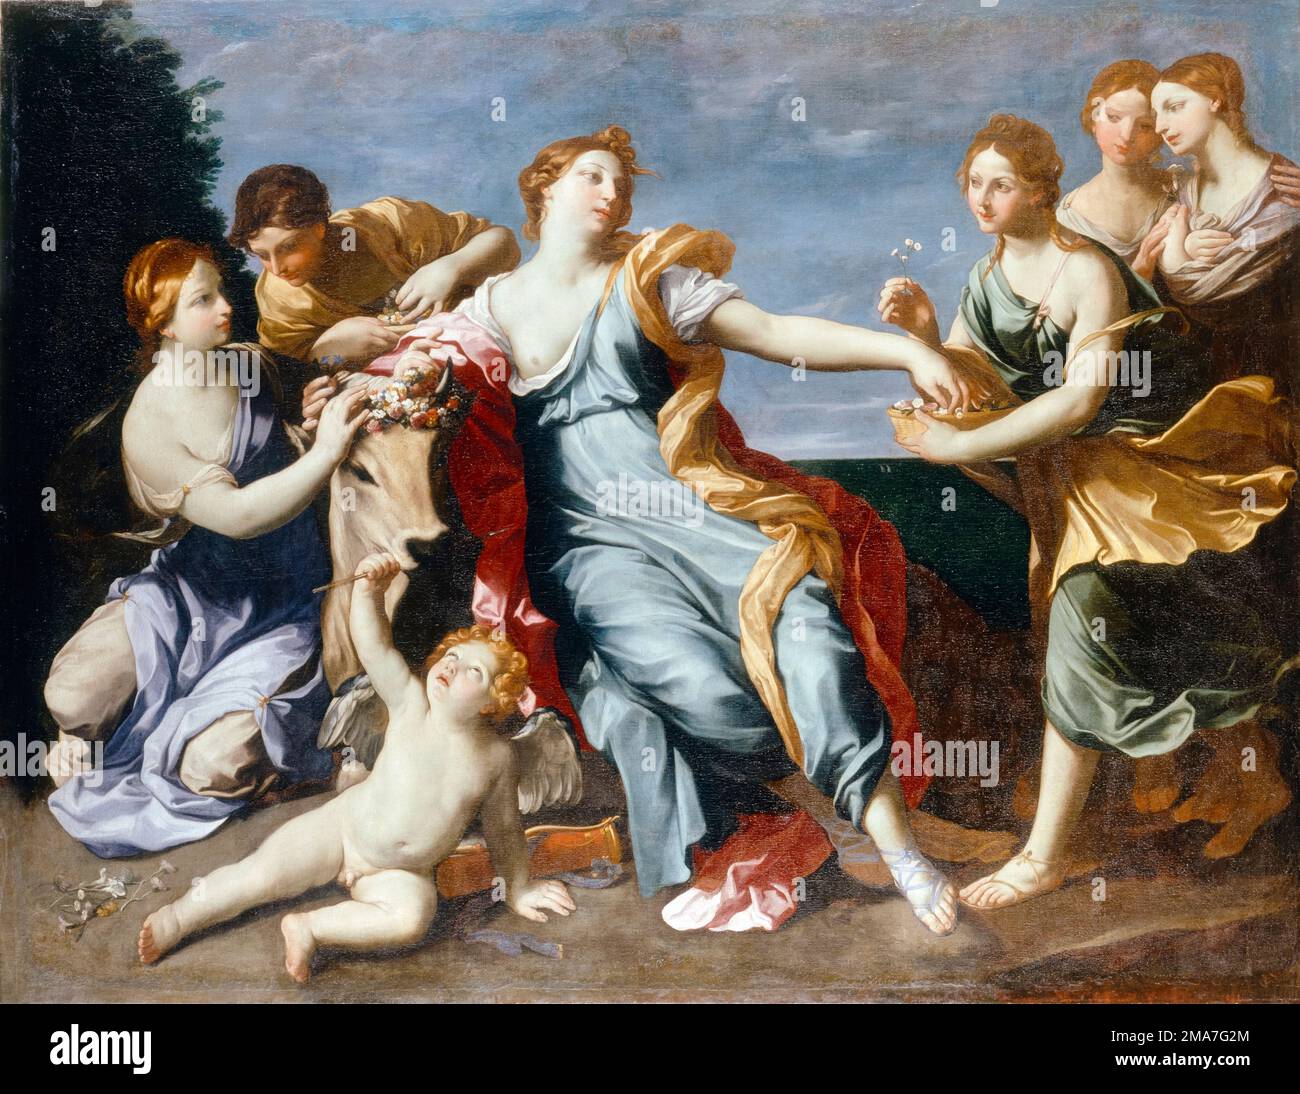 Guido Reni, le viol d'Europa, peinture à l'huile sur toile, après 1630 Banque D'Images